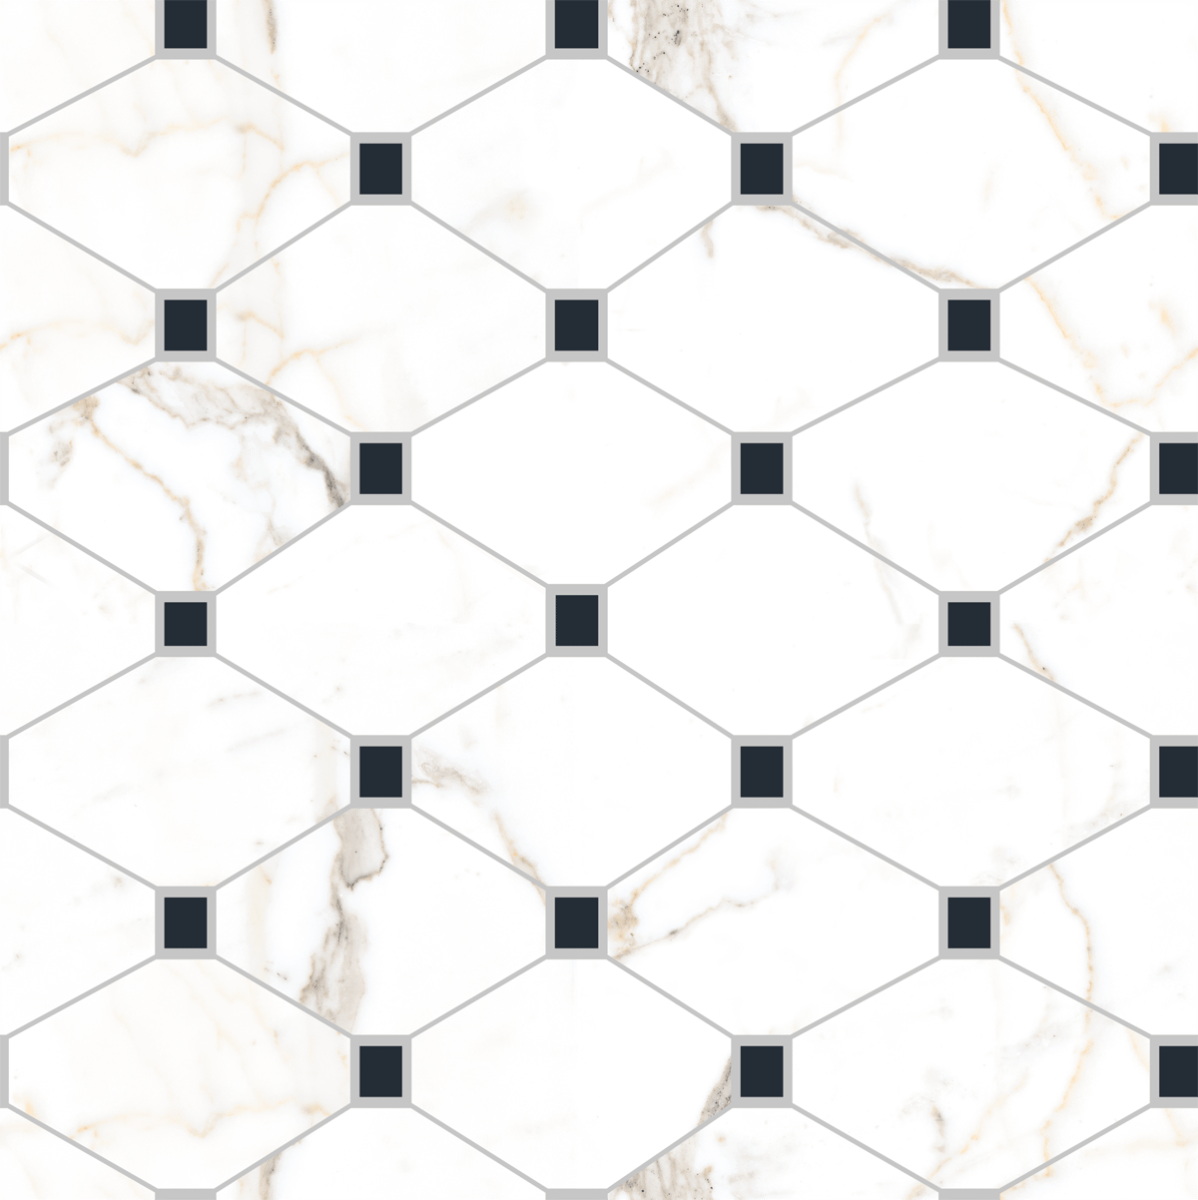 2x2 Tiles for Living Room Tiles, Kitchen Tiles, Bedroom Tiles, Accent Tiles, Office Tiles, Bar Tiles, Restaurant Tiles, Hospital Tiles, Bar/Restaurant, Commercial/Office